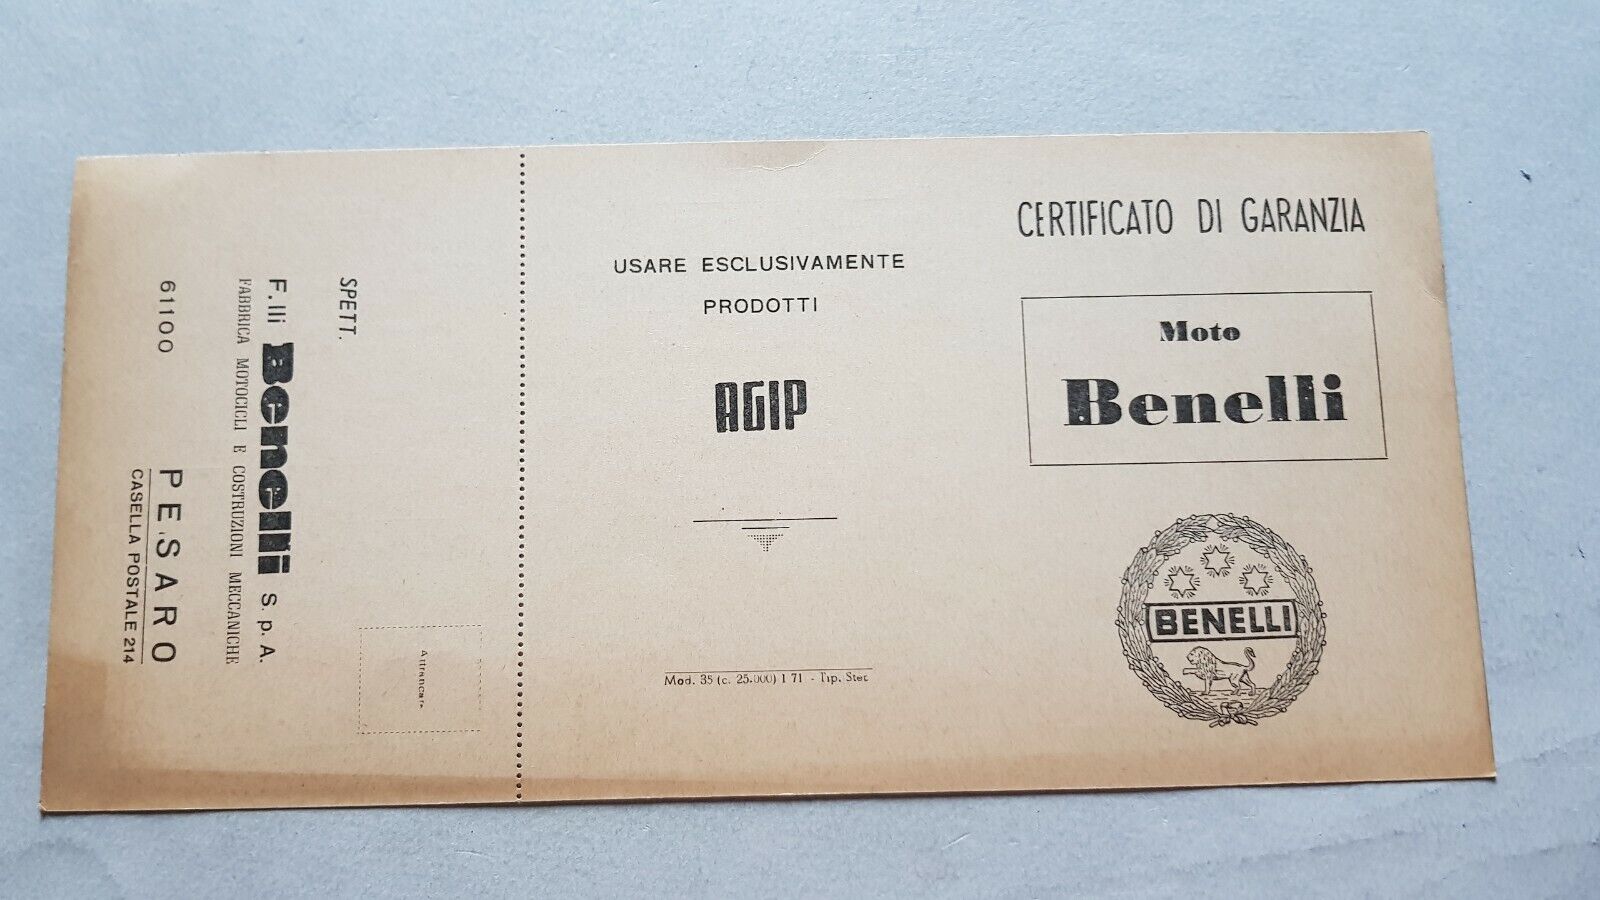 Benelli 1971 libretto tessera garanzia originale moto ciclomotori no depliant